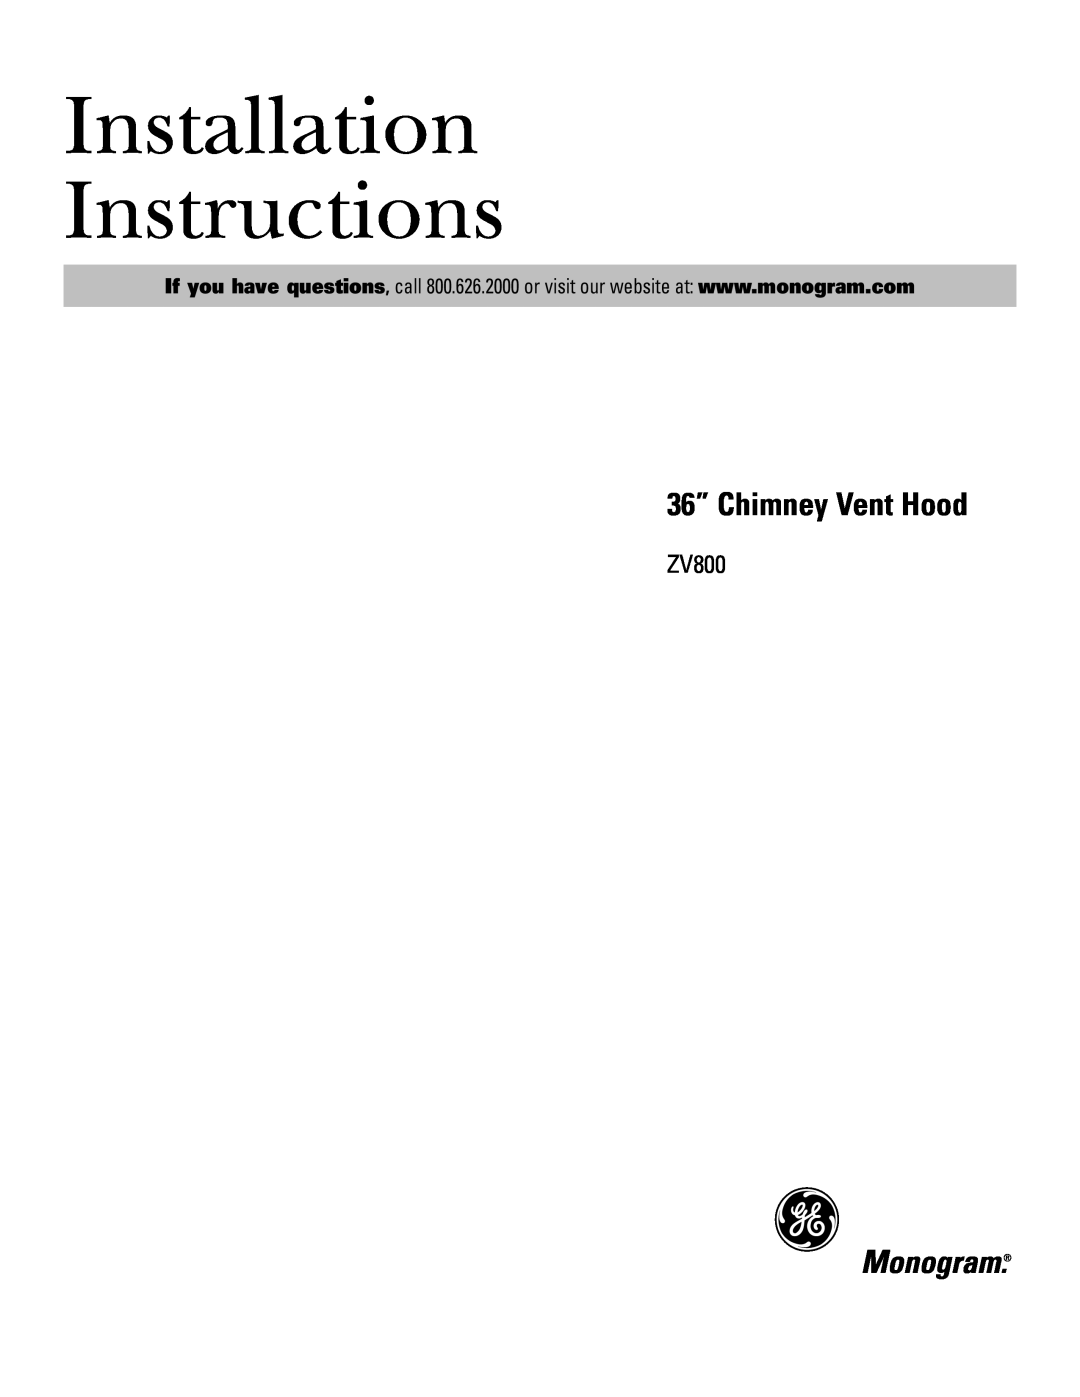 GE ZV800 installation instructions Installation Instructions, 36” Chimney Vent Hood 